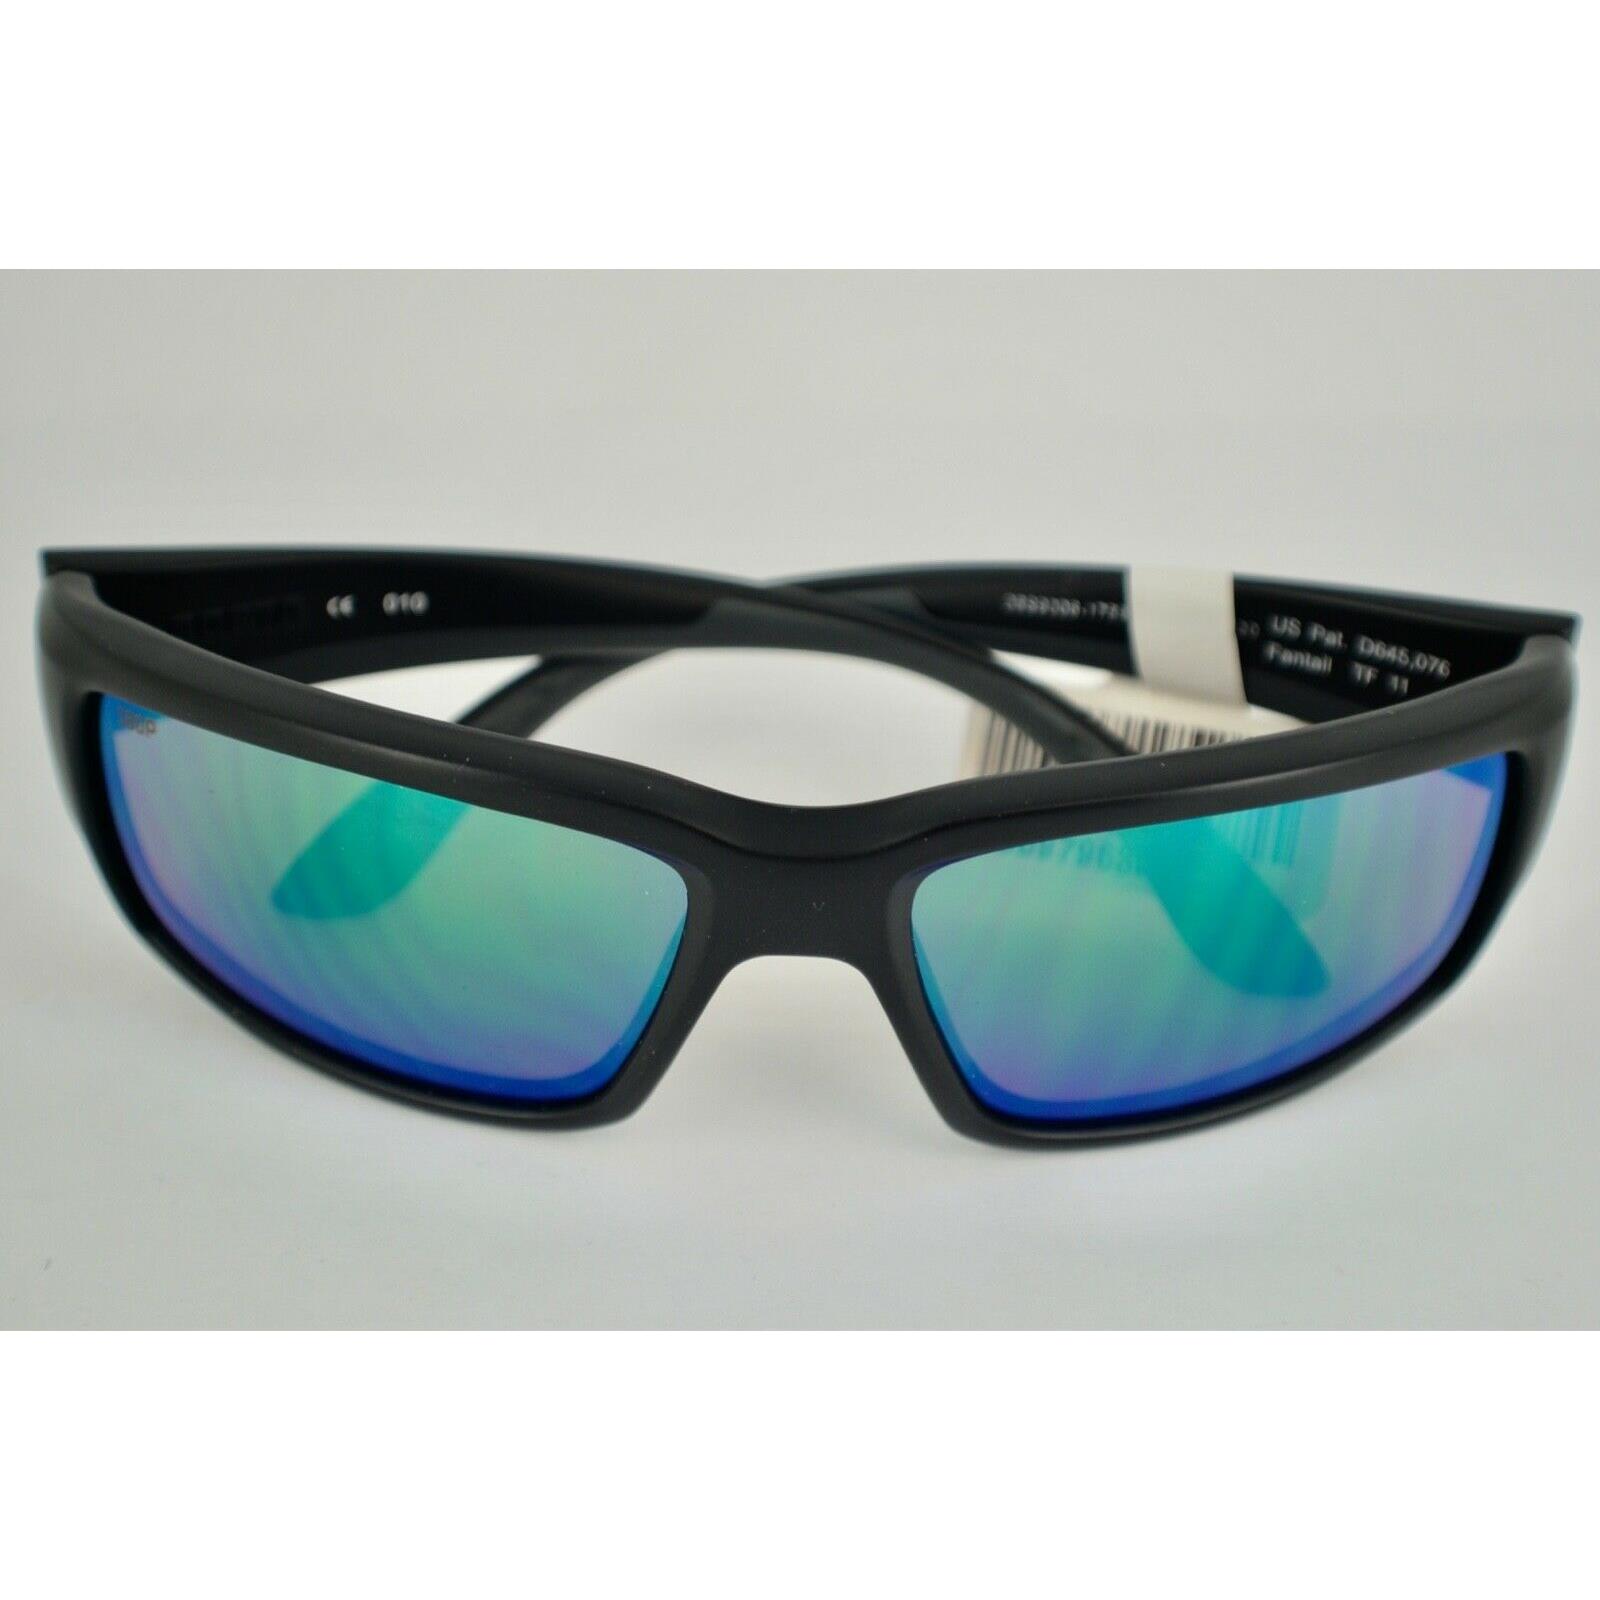 Costa Del Mar Fantail Sunglasses Black Green Mirror Polarized 580P 